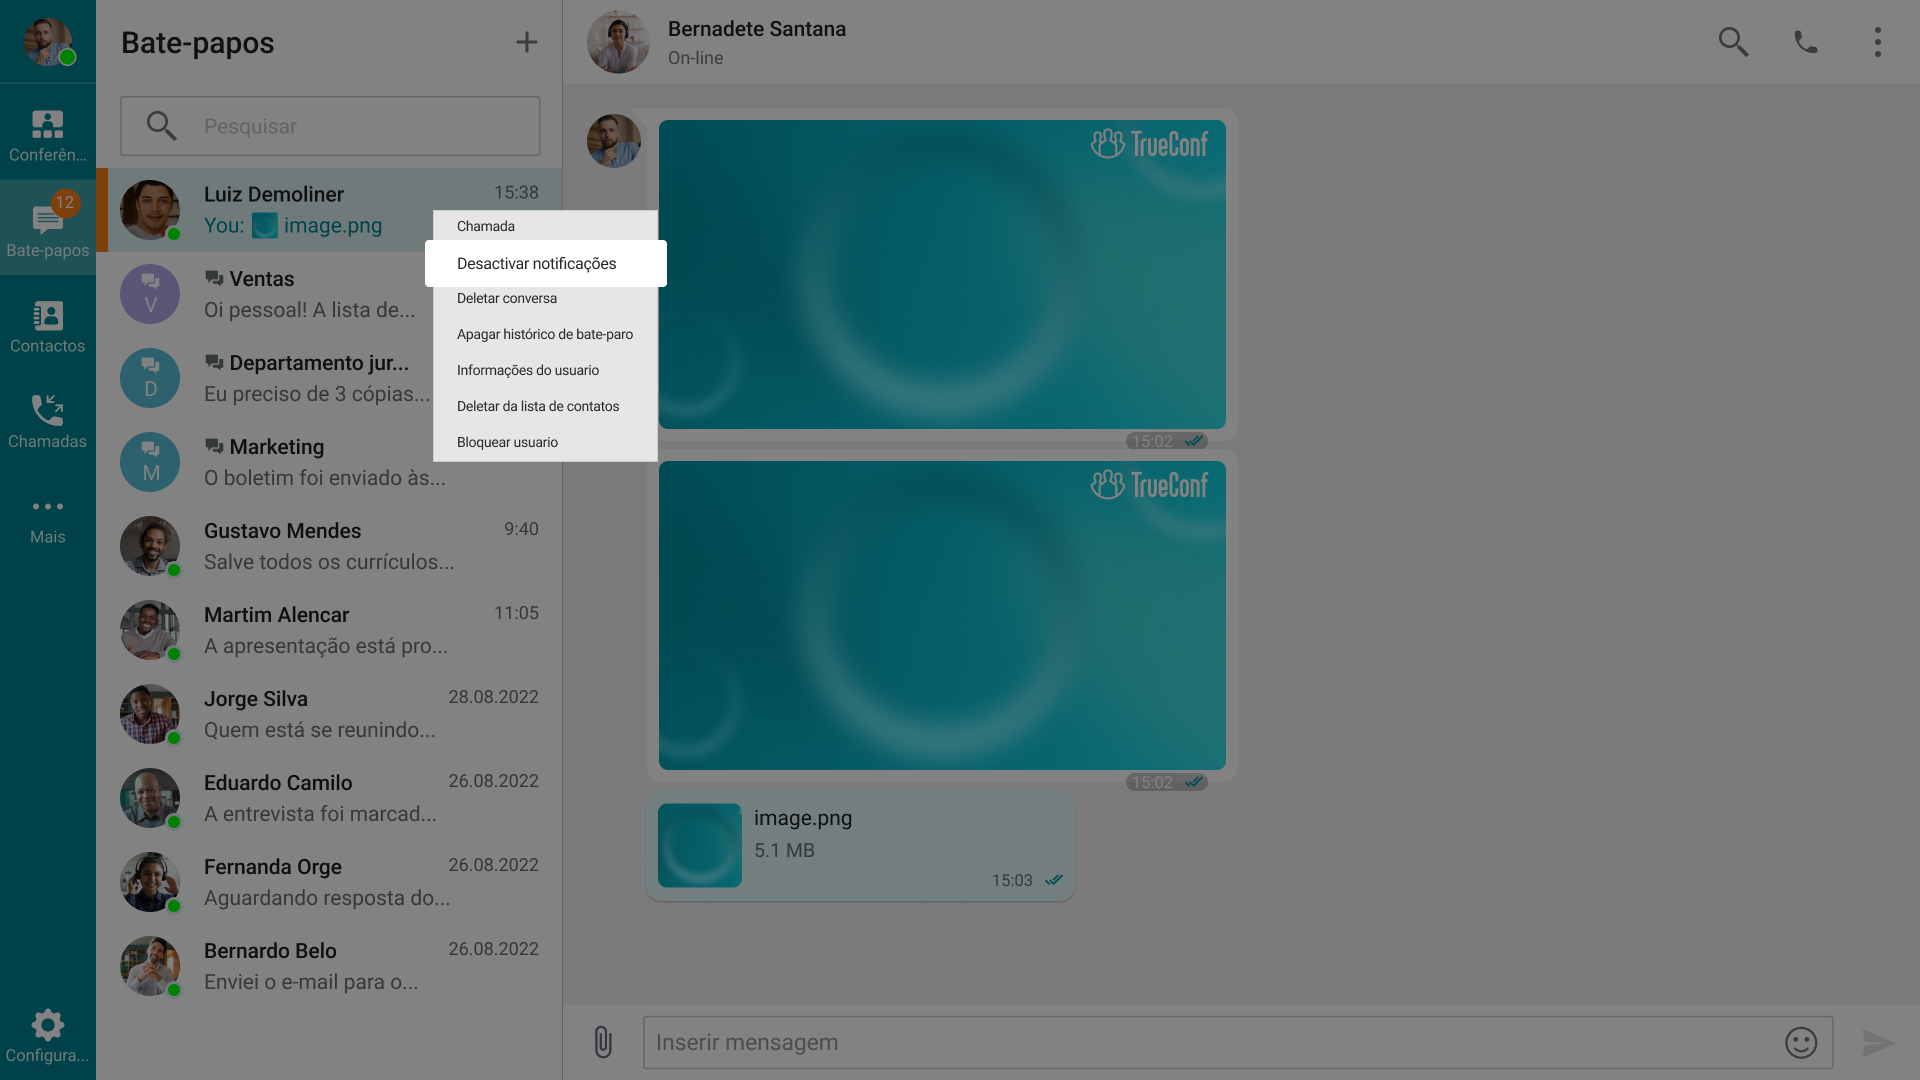 TrueConf 8.3 para Windows: Novo recurso baseado em IA, anotações sobre o conteúdo e compartilhamento de arquivos de vídeo 12